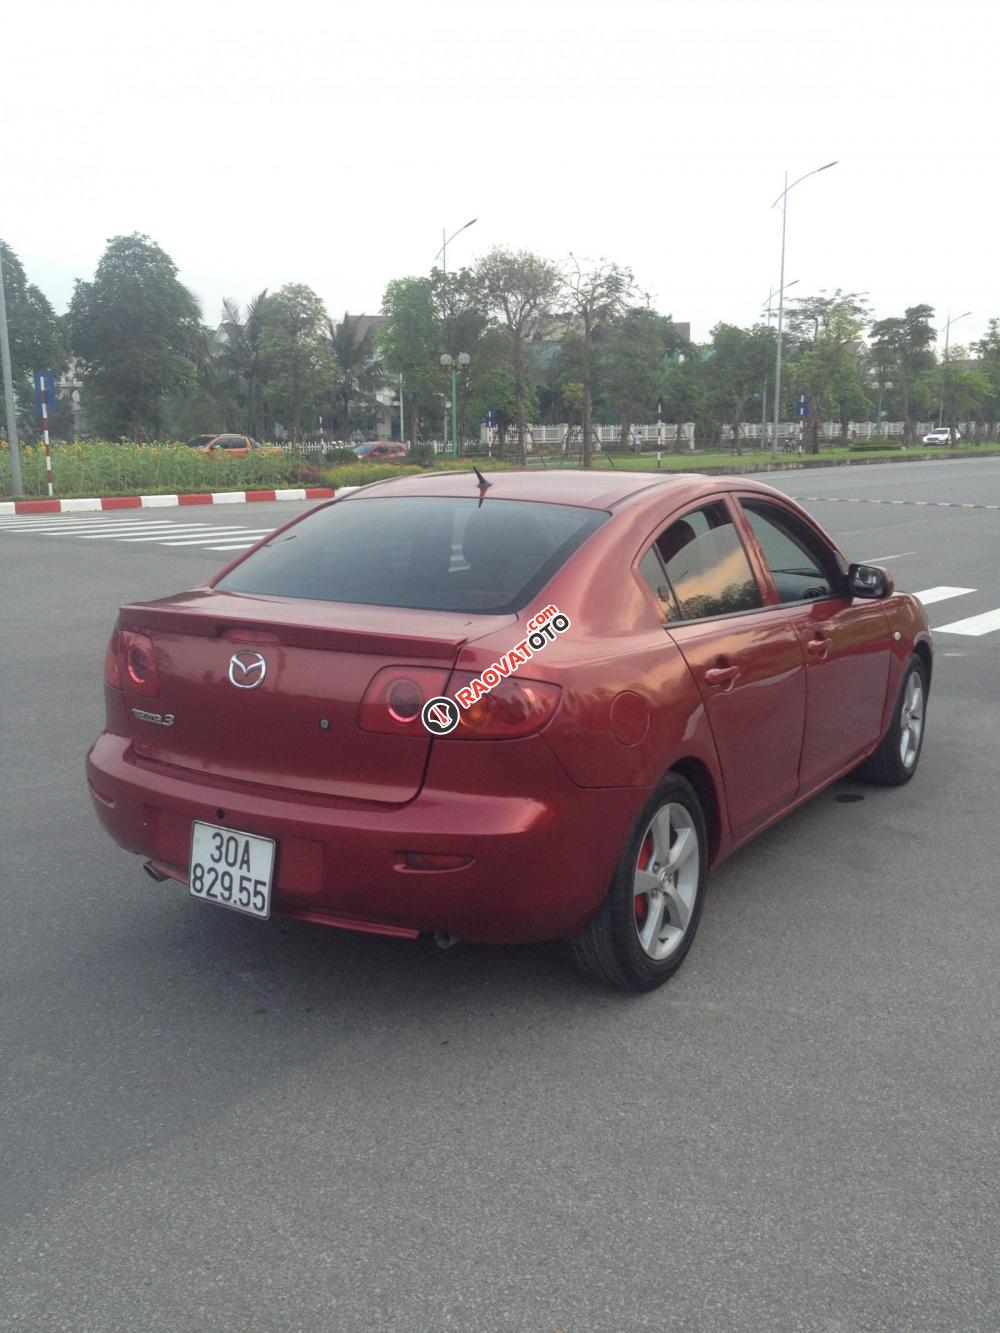 Bán xe Mazda 3 1.6AT, năm 2004, màu đỏ mận, giá bán 270 triệu-1